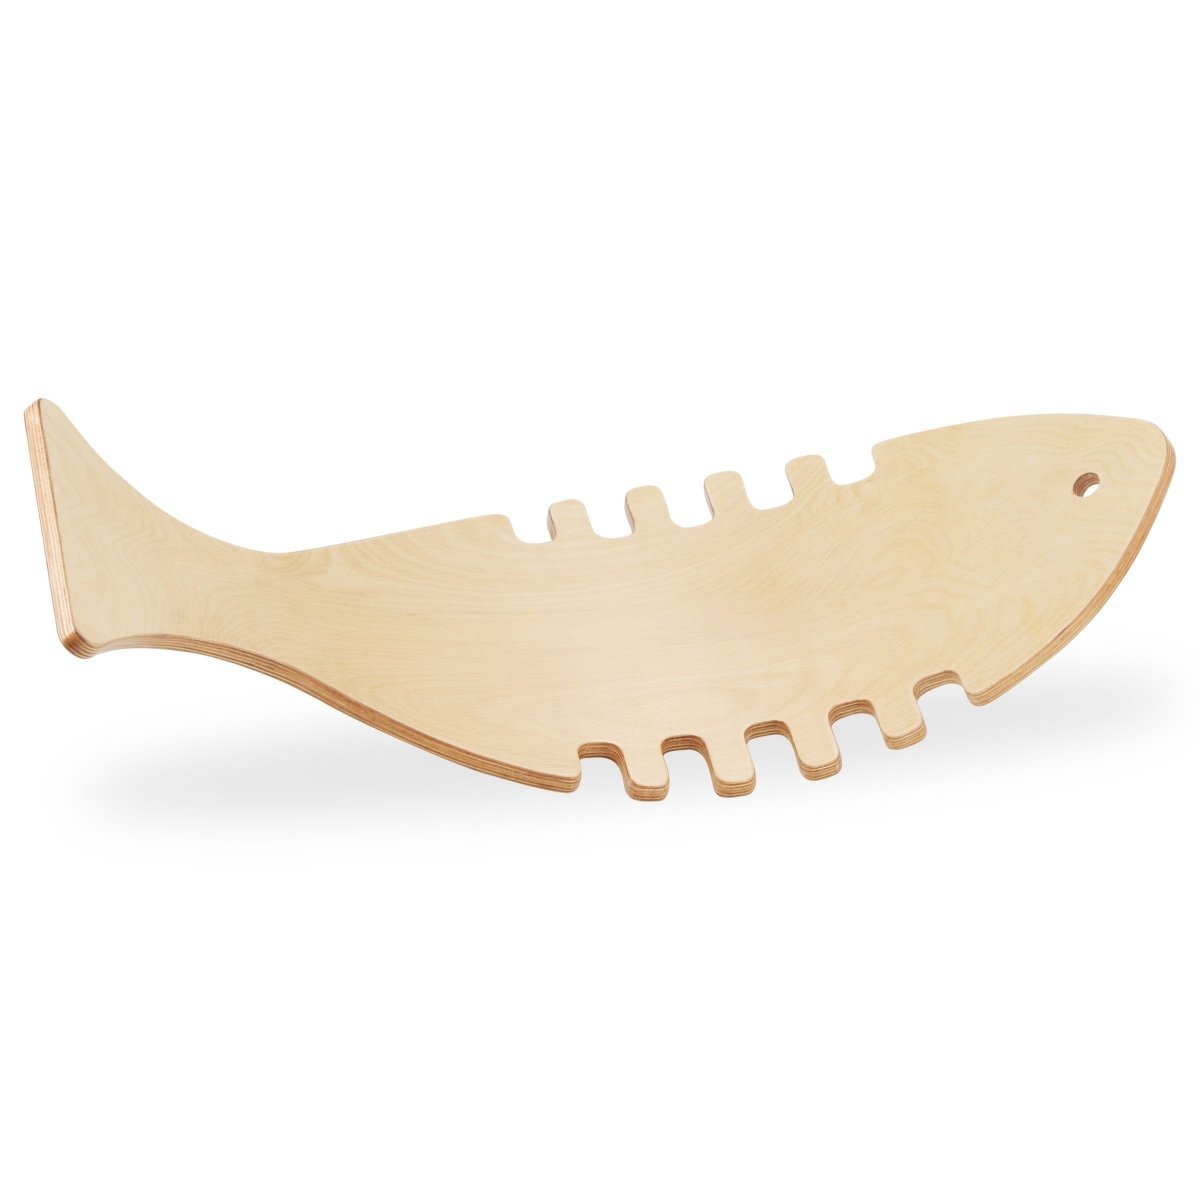 Drewniana deska do balansowania w kształcie ryby - bujak balansowy